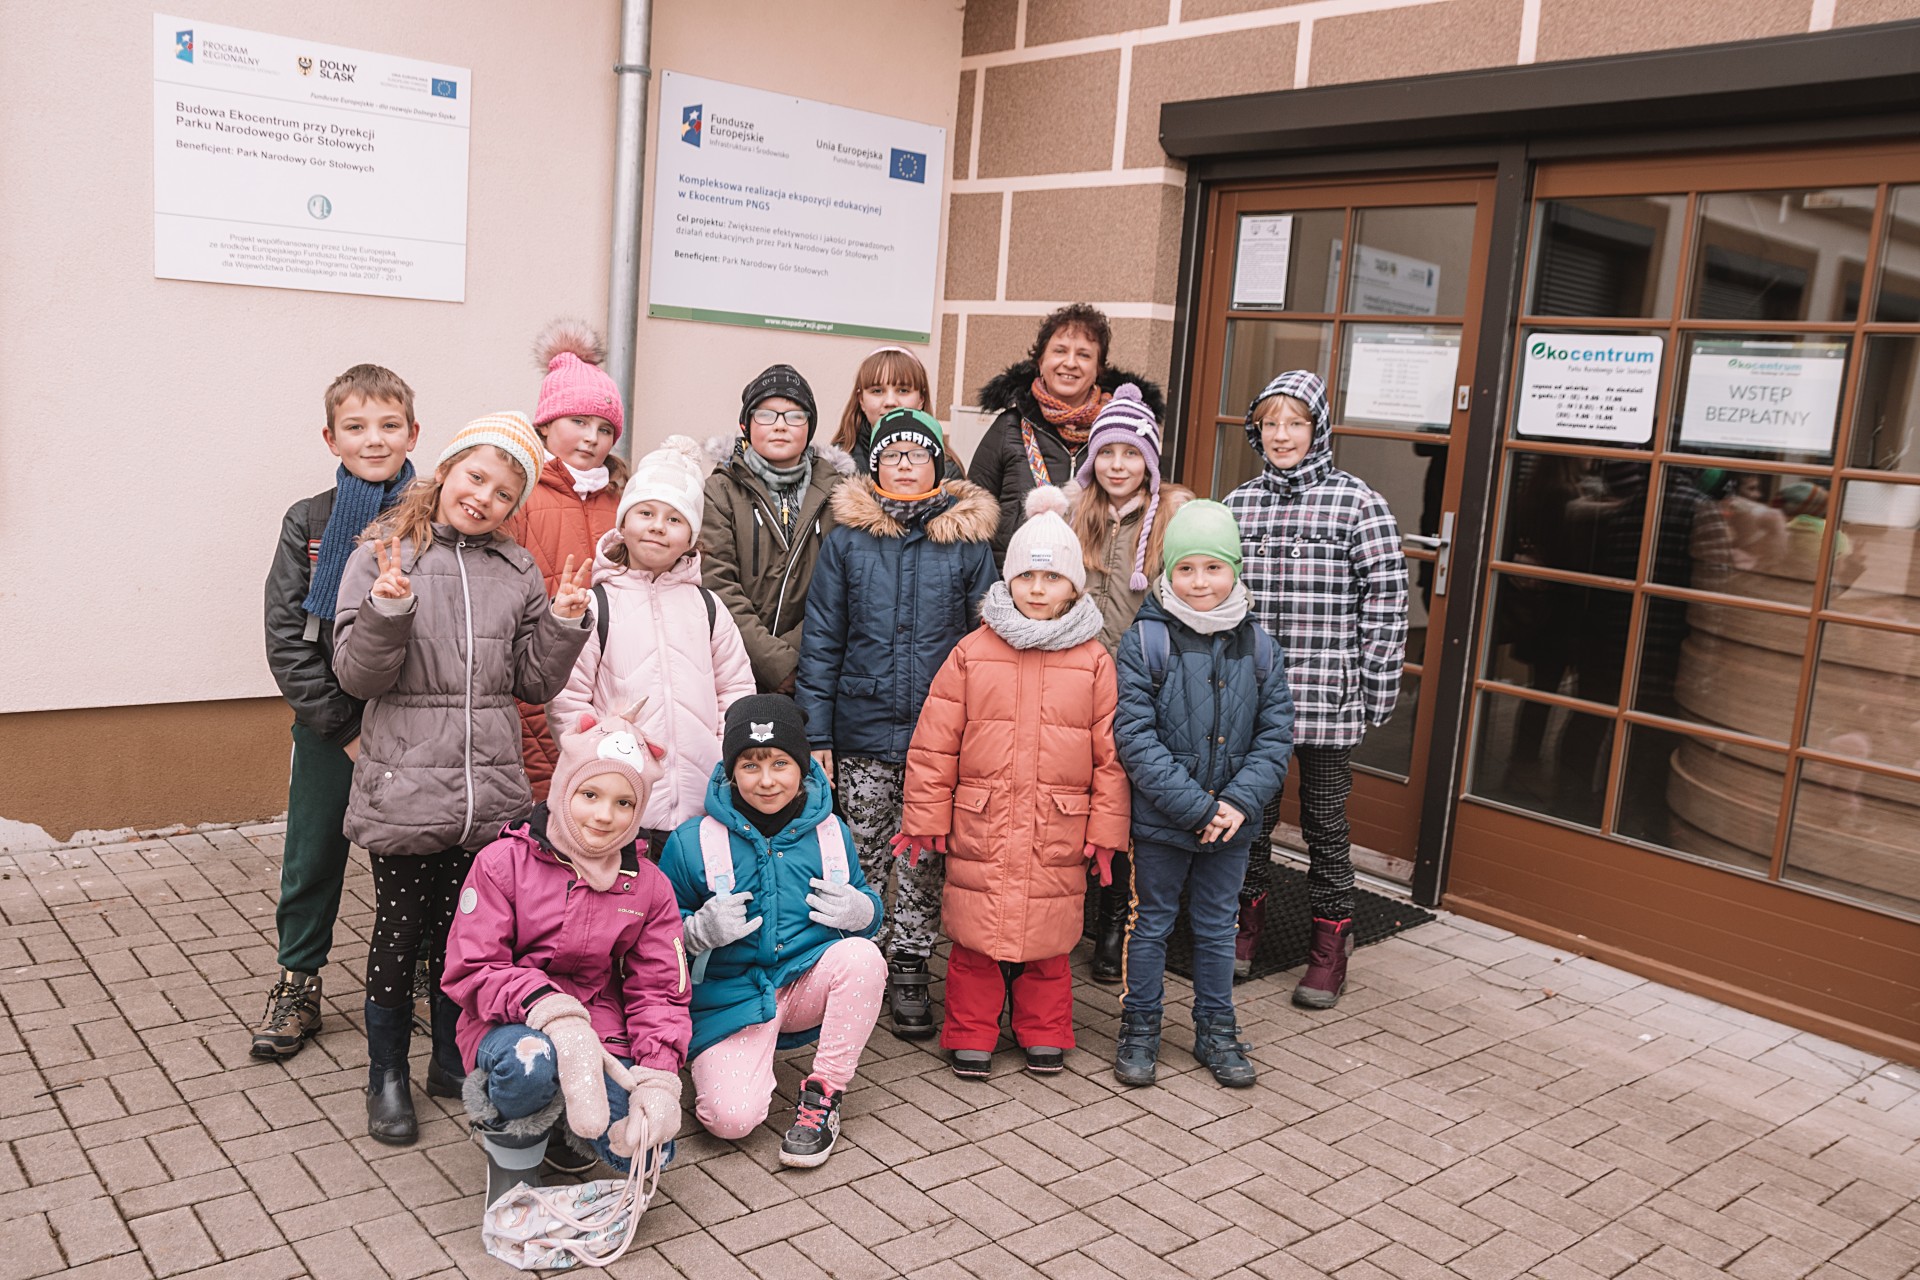 Grupa dzieci stojących przed wejściem do budynku